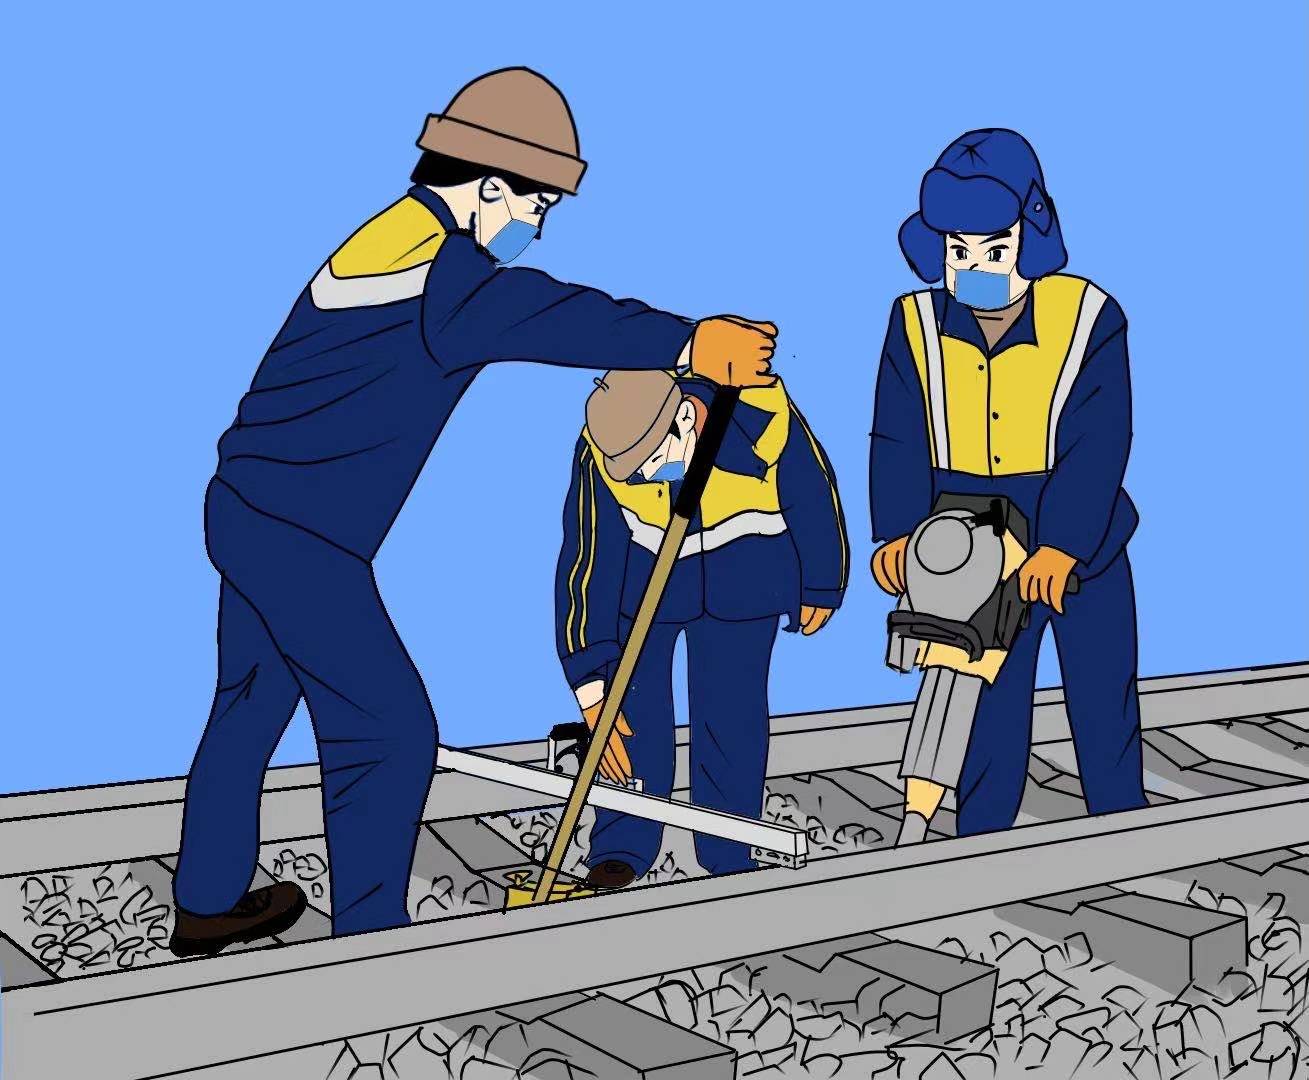 铁路工人漫画图片